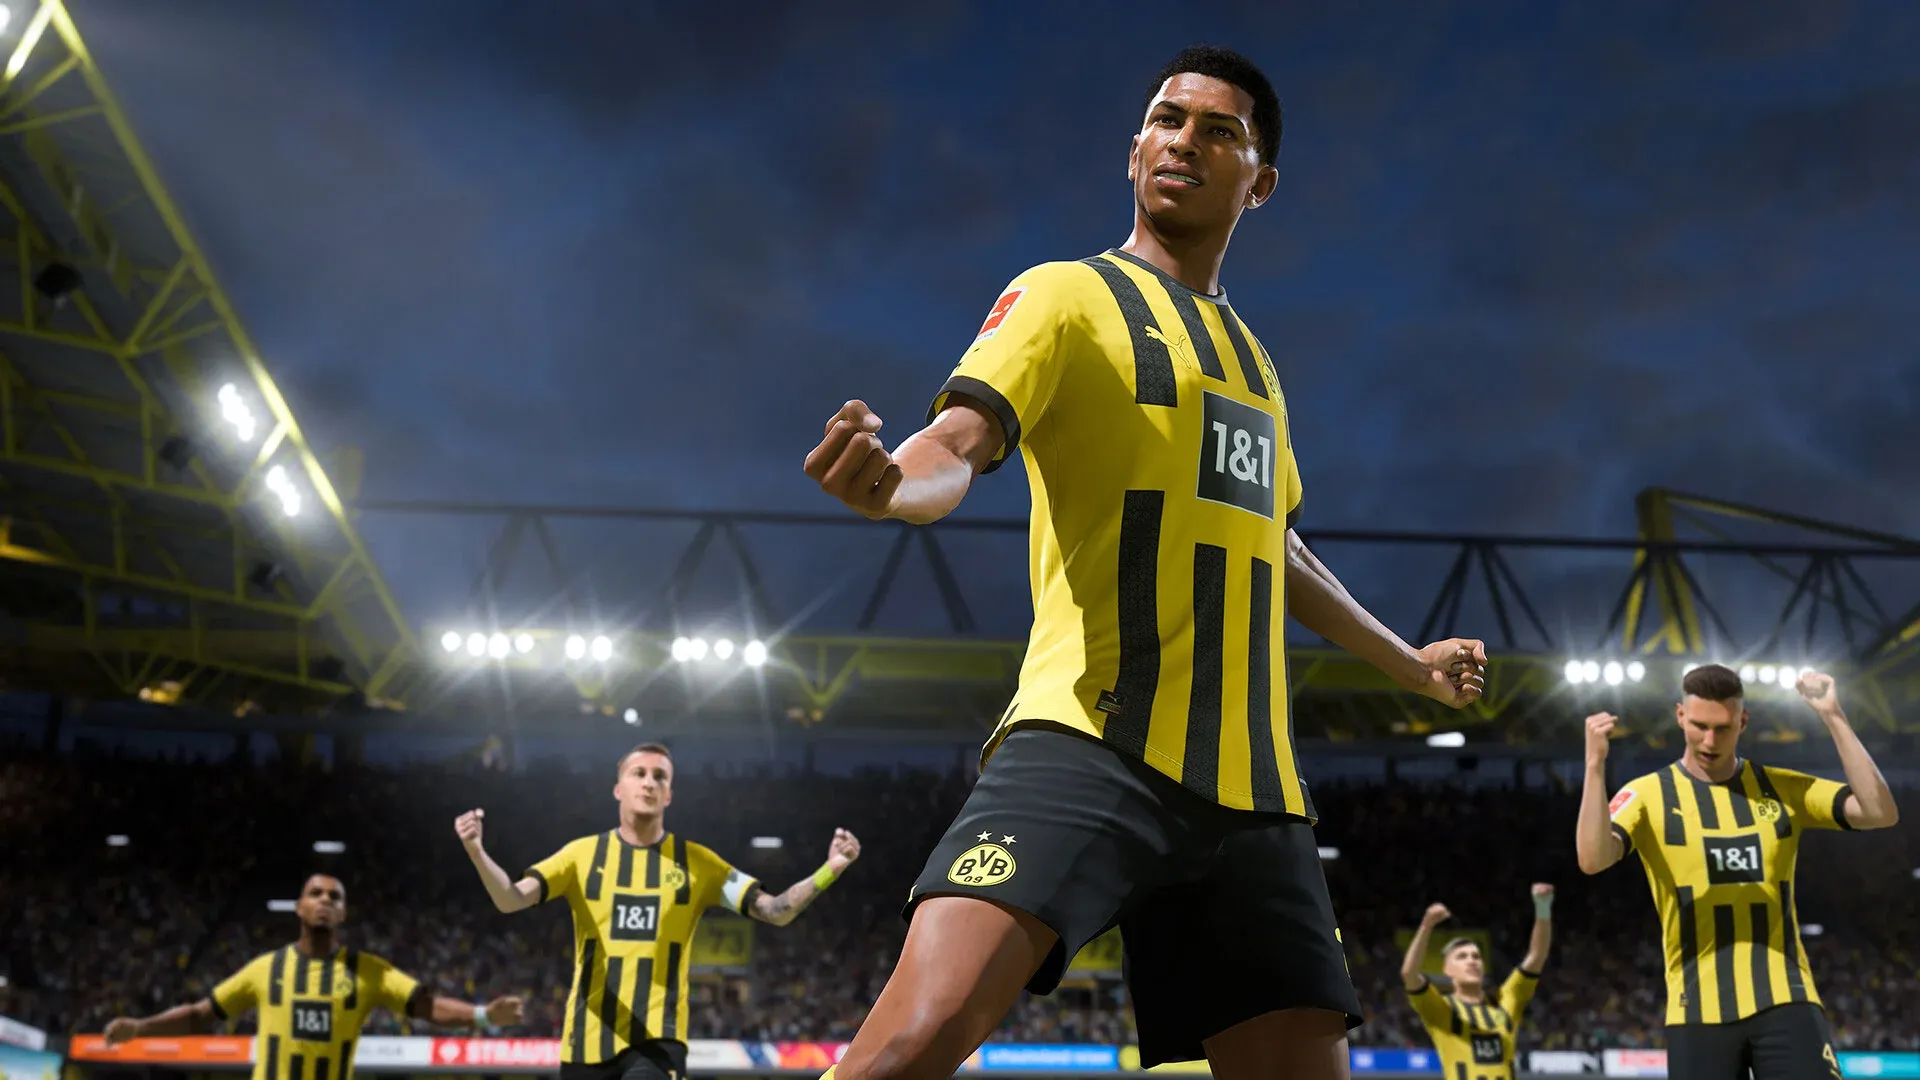 FIFA 23 - data de lançamento, edições, preços, tudo o que sabemos